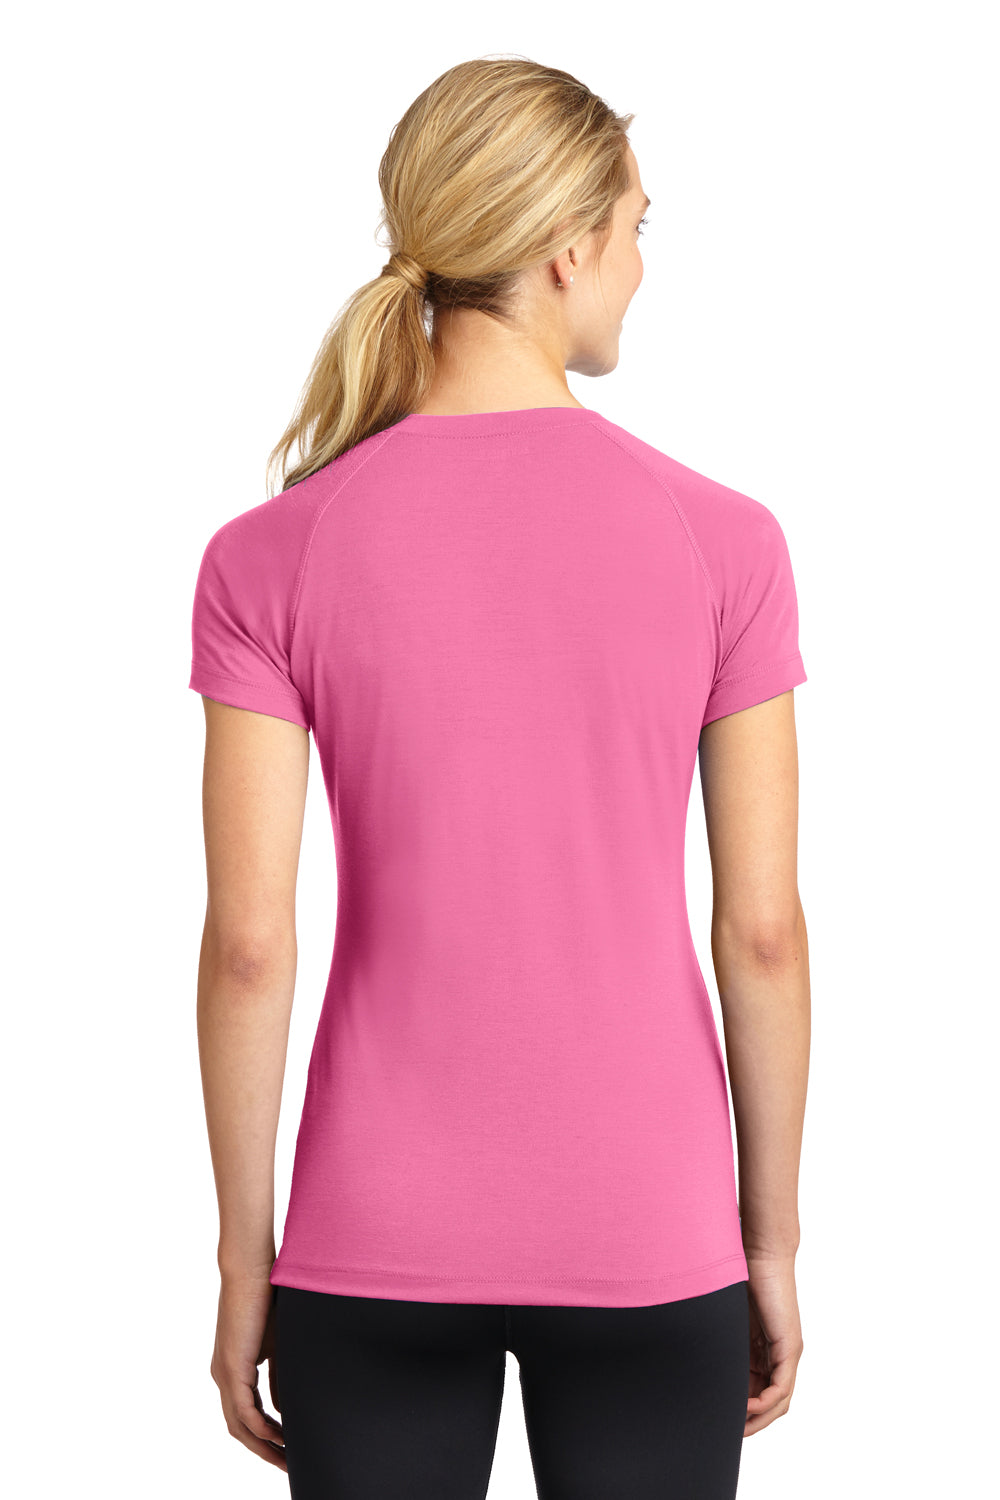 Sport-Tek LST700 Womens Ultimate Performance Moisture Wicking Short Sleeve V-Neck T-Shirt Pink Back